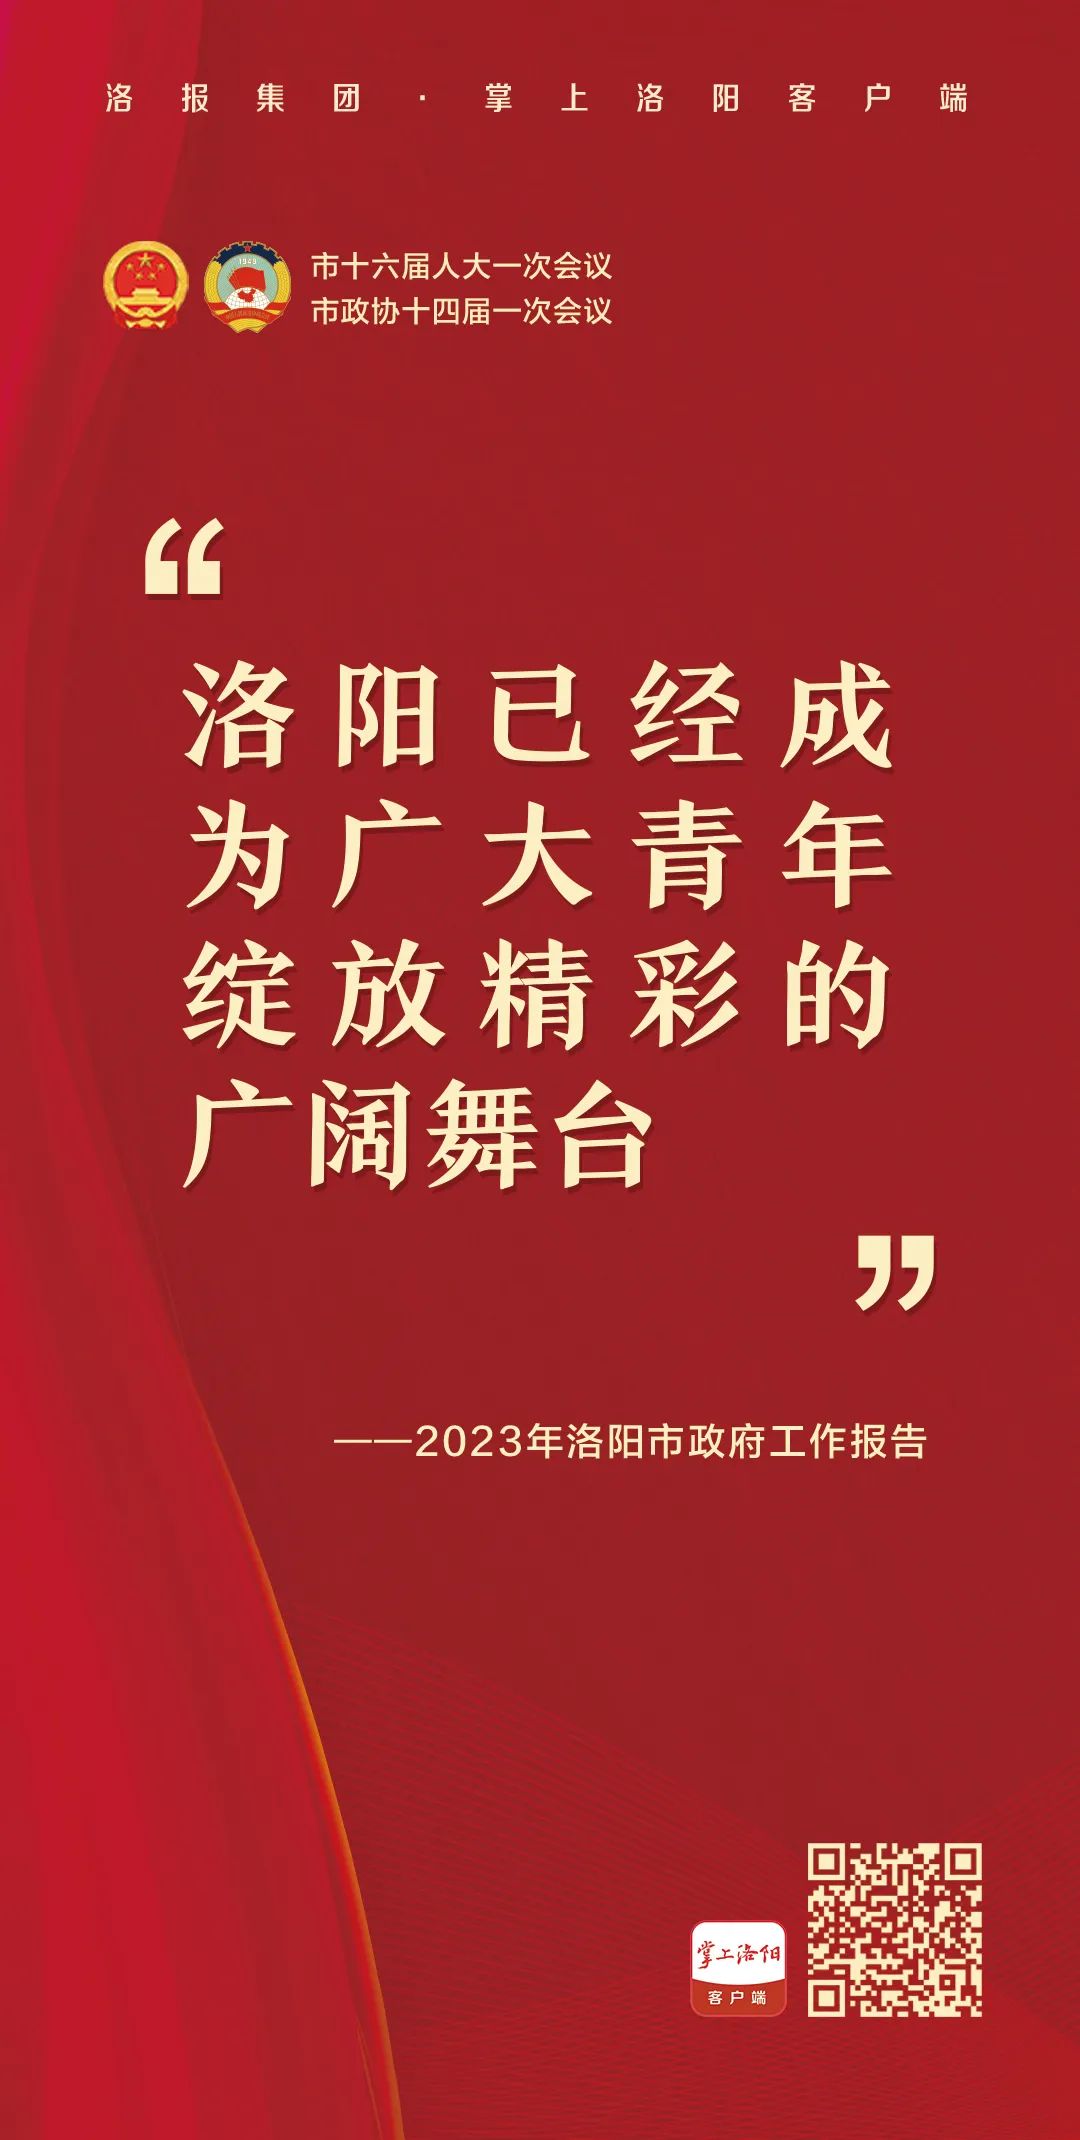 1108中国记者节报导宣传创意手绘插画手机海报_图片模板素材-稿定设计